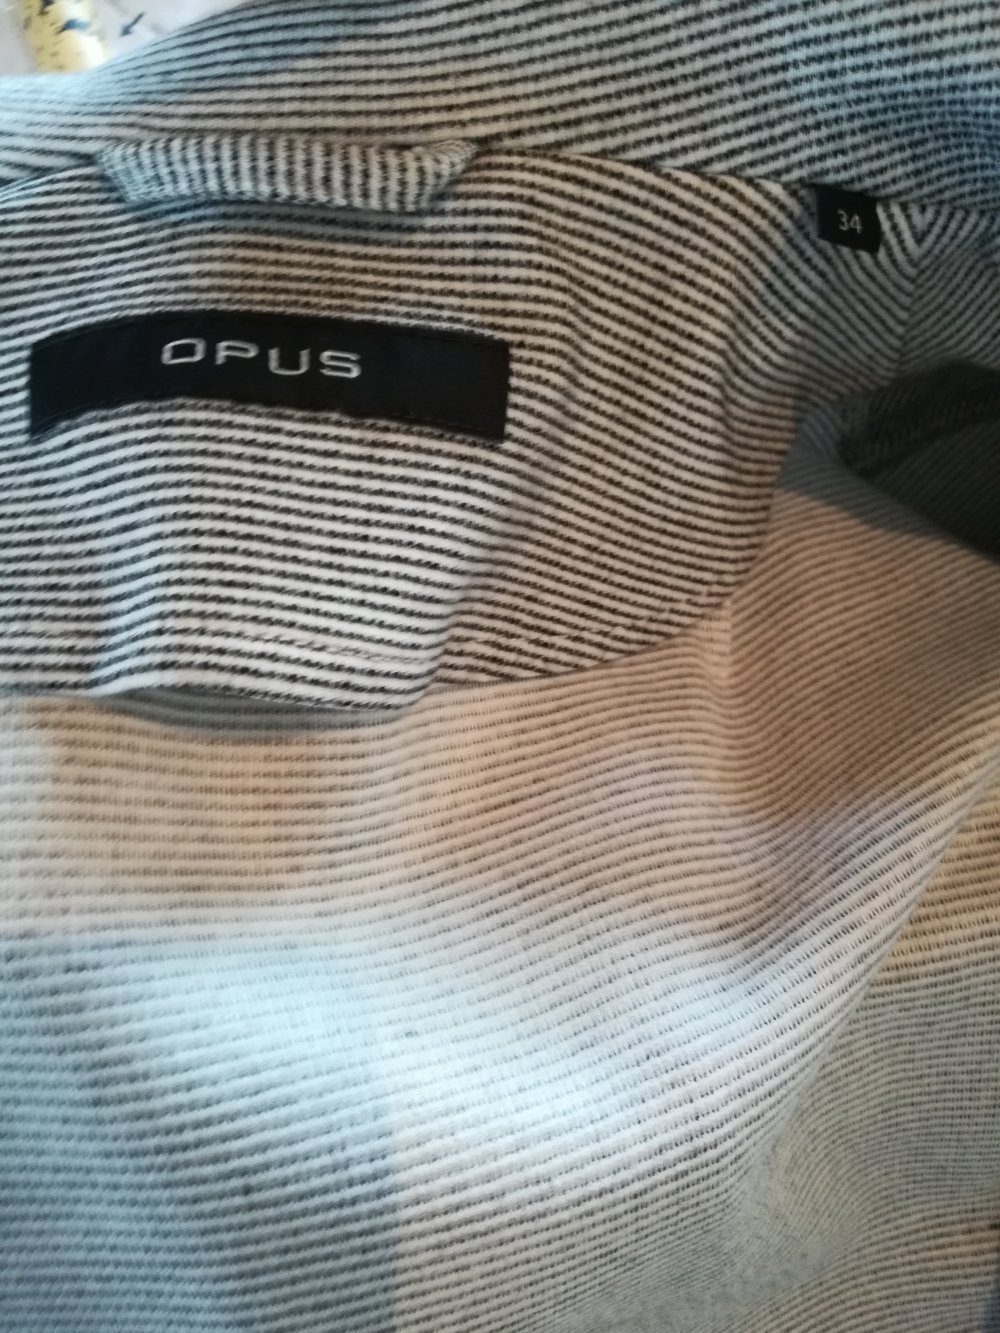 Opus Juno Stripe Blazer neuwertig Gr. 34 XS weiß grau schwarz klassisch